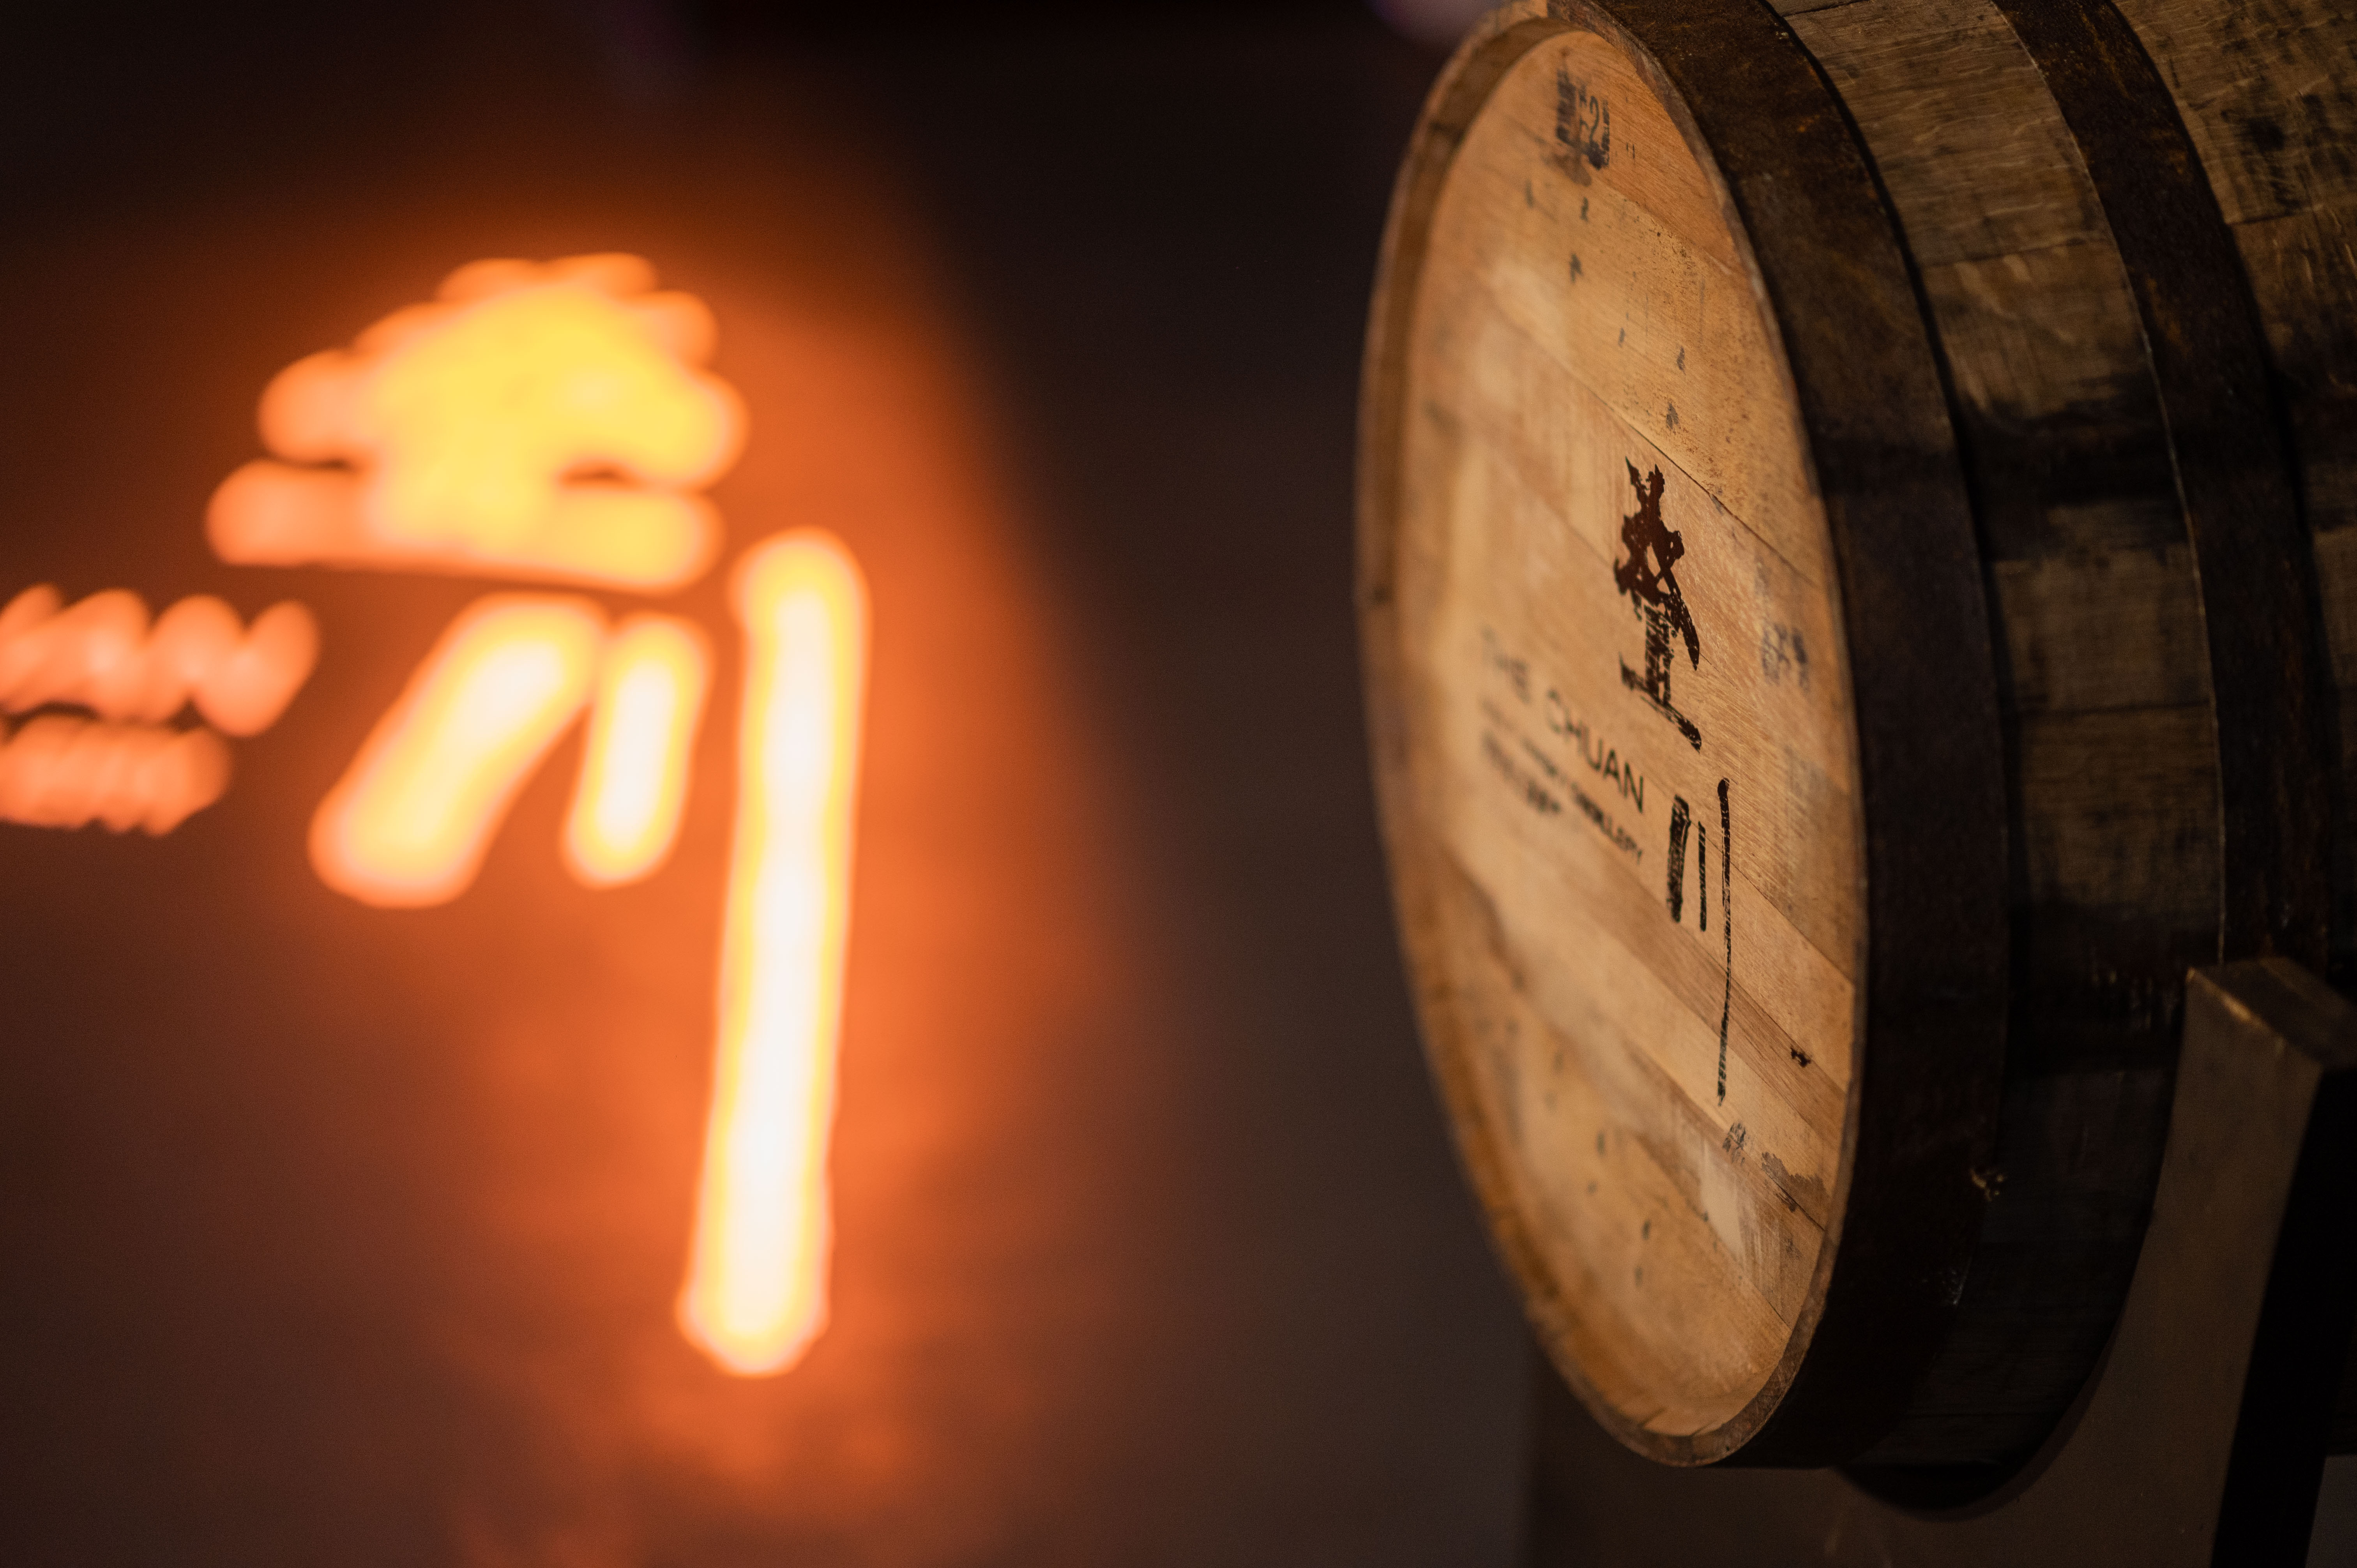 叠川麦芽威士忌酒厂发布元年单桶并推出私人定制服务